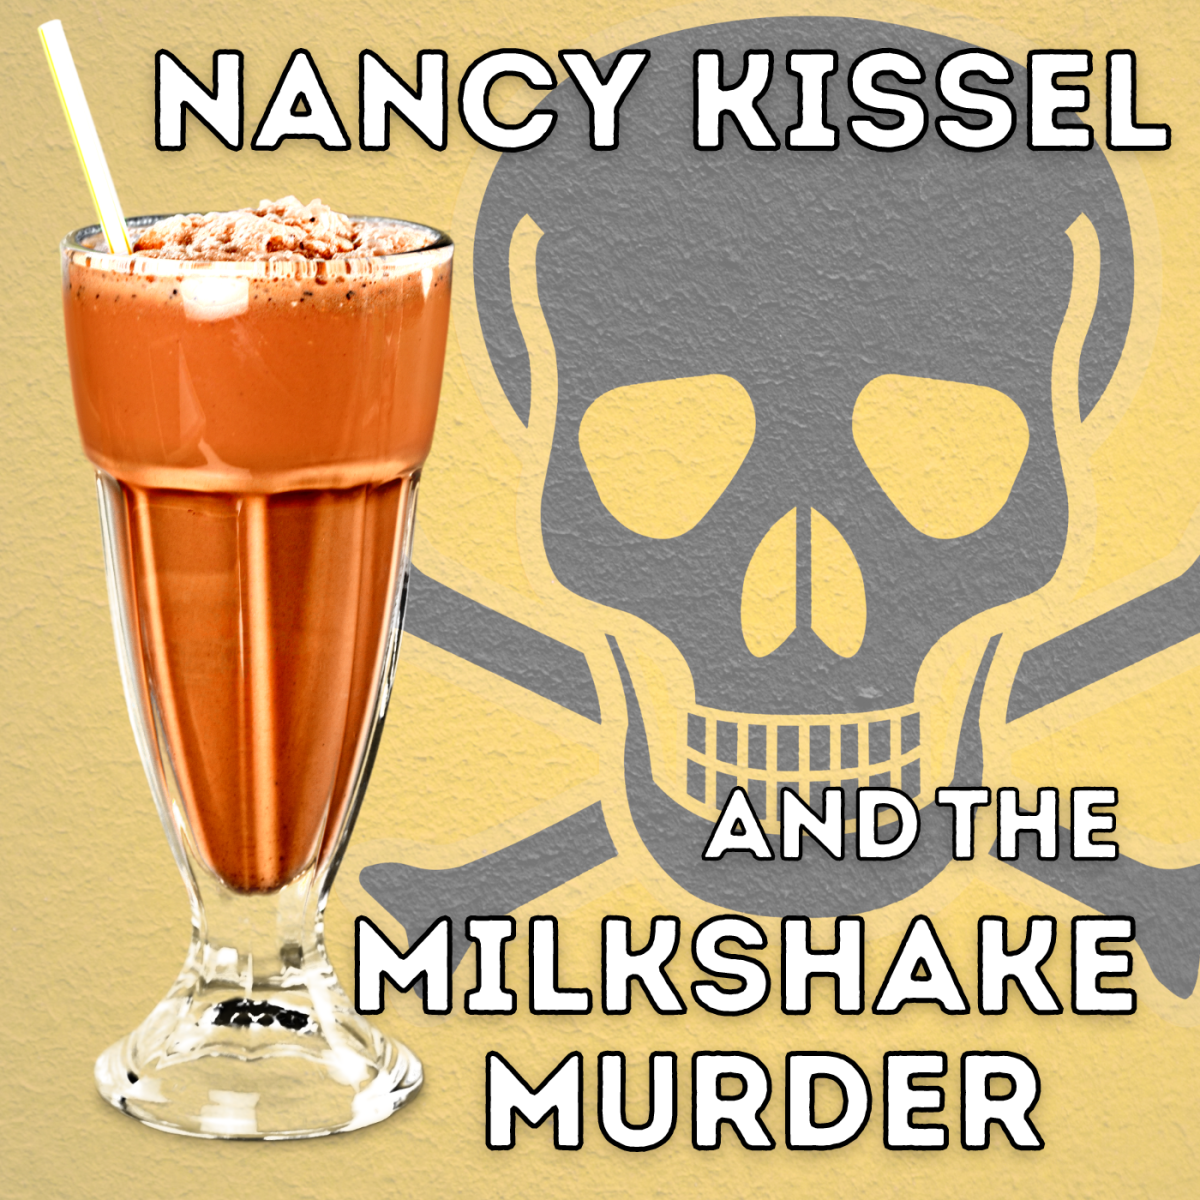 Milkshake Murderer: How Nancy Kissel Drugged and Killed Her Husband Robert Kissel